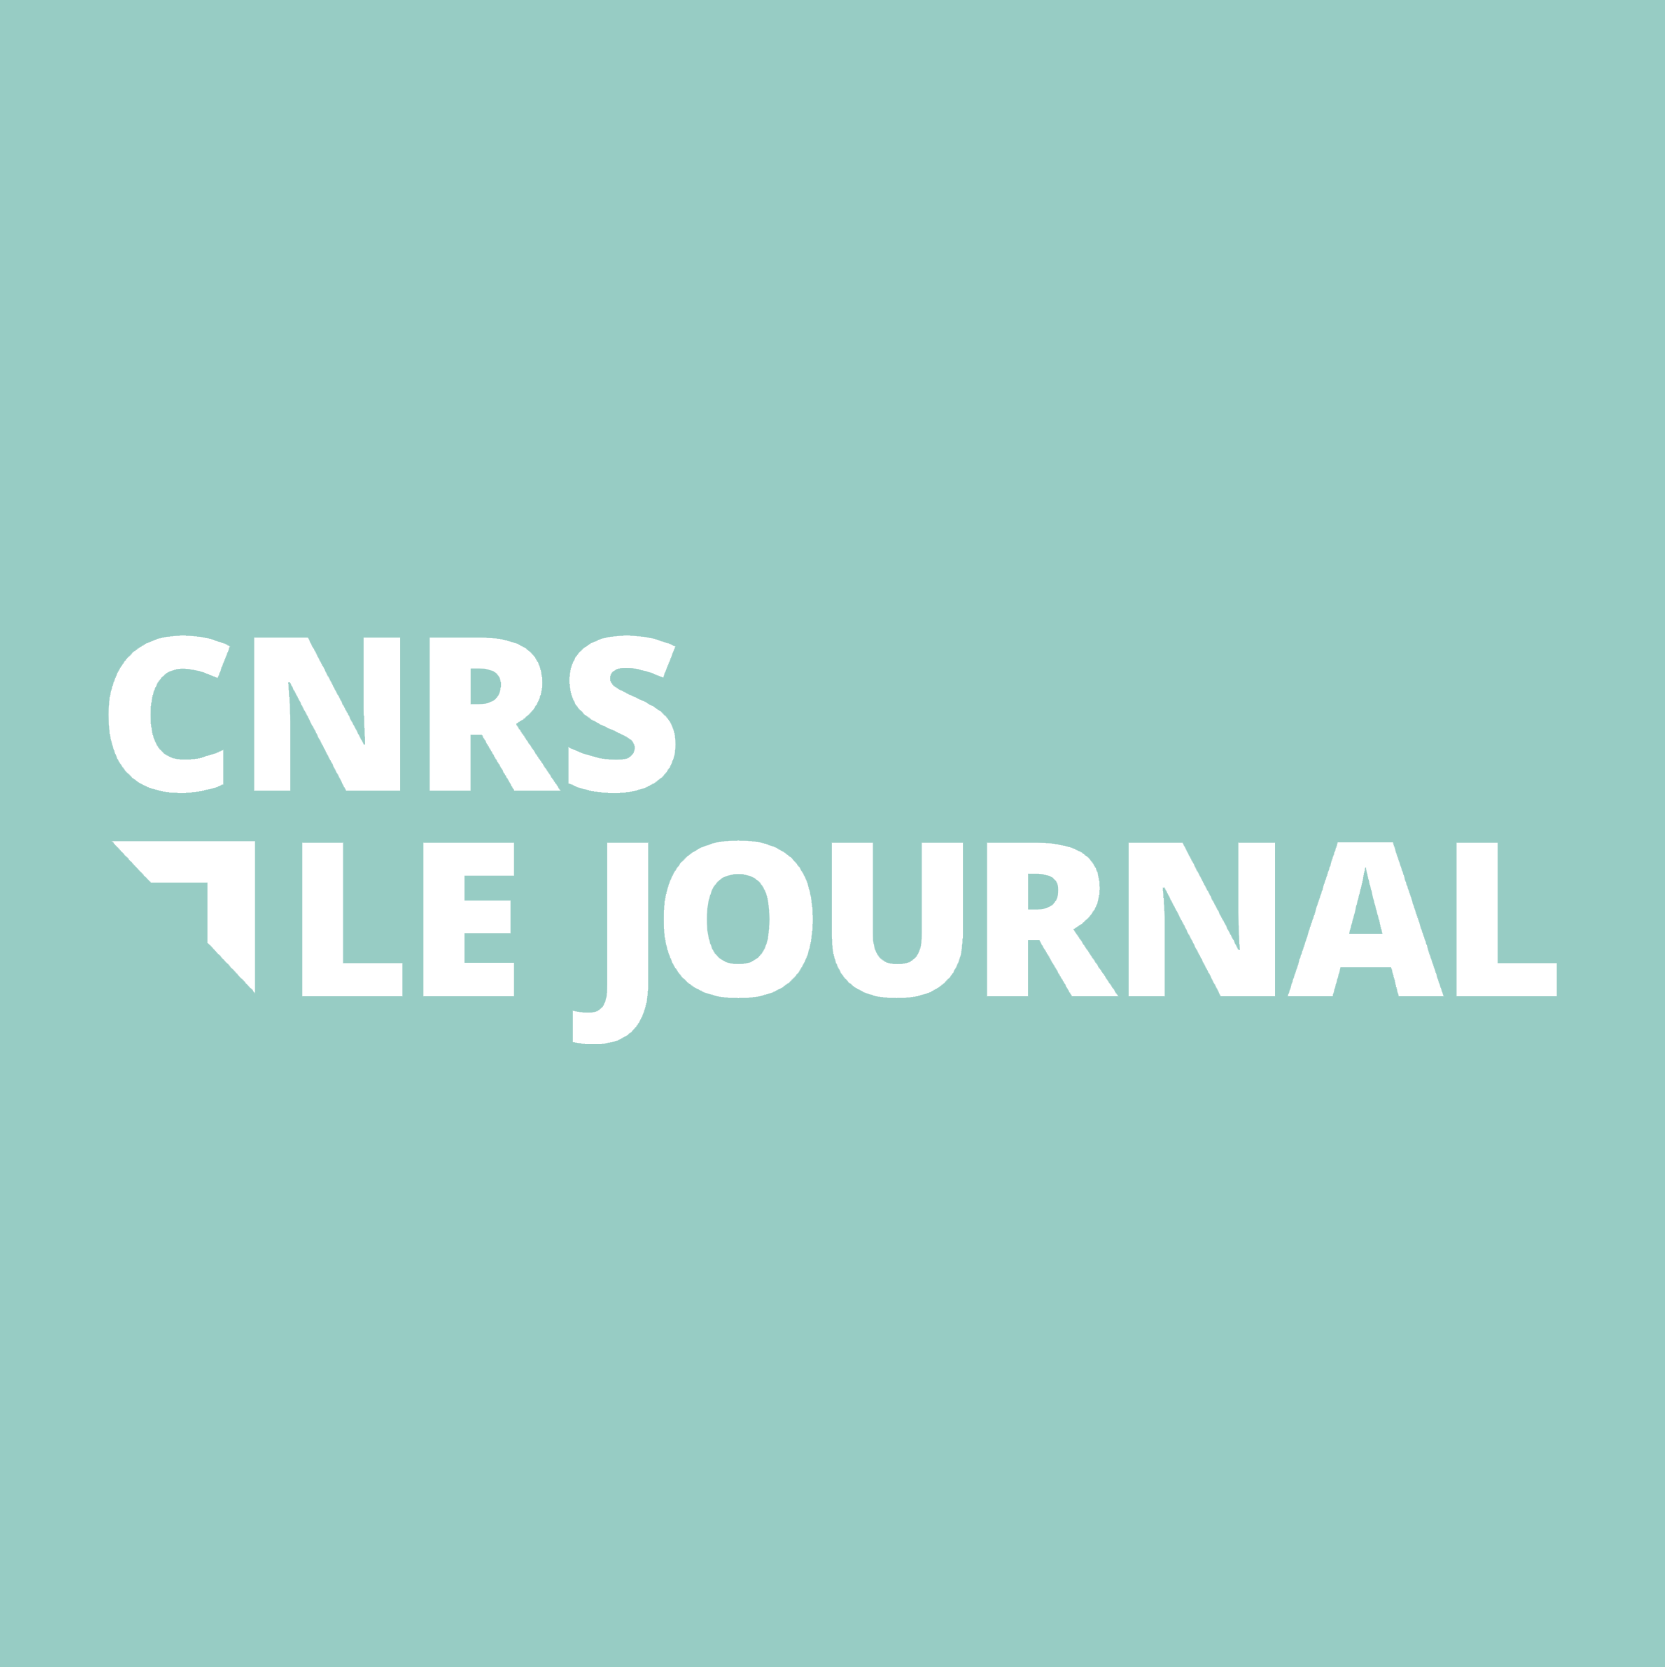 Hln_portfolio_CNRS_logo1